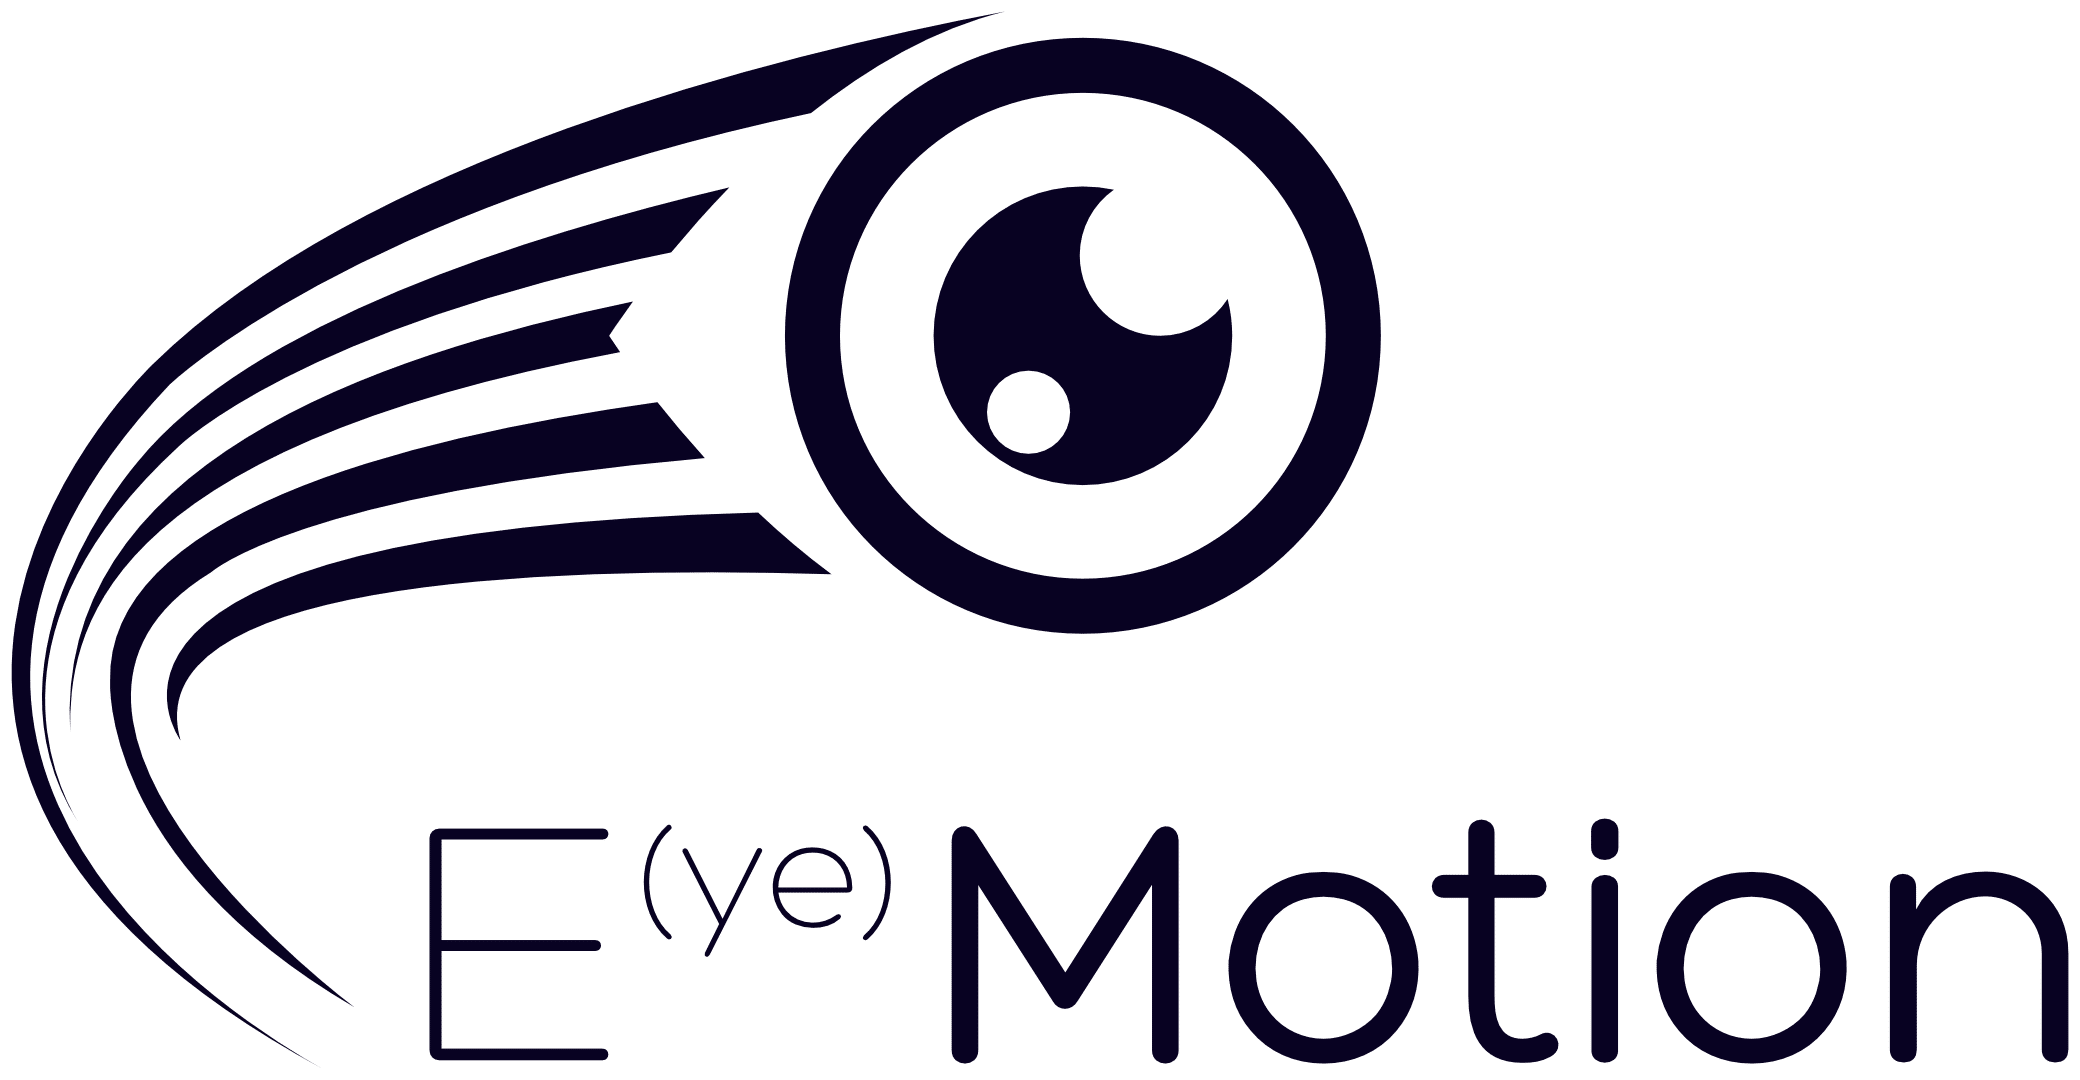 Eye Motion